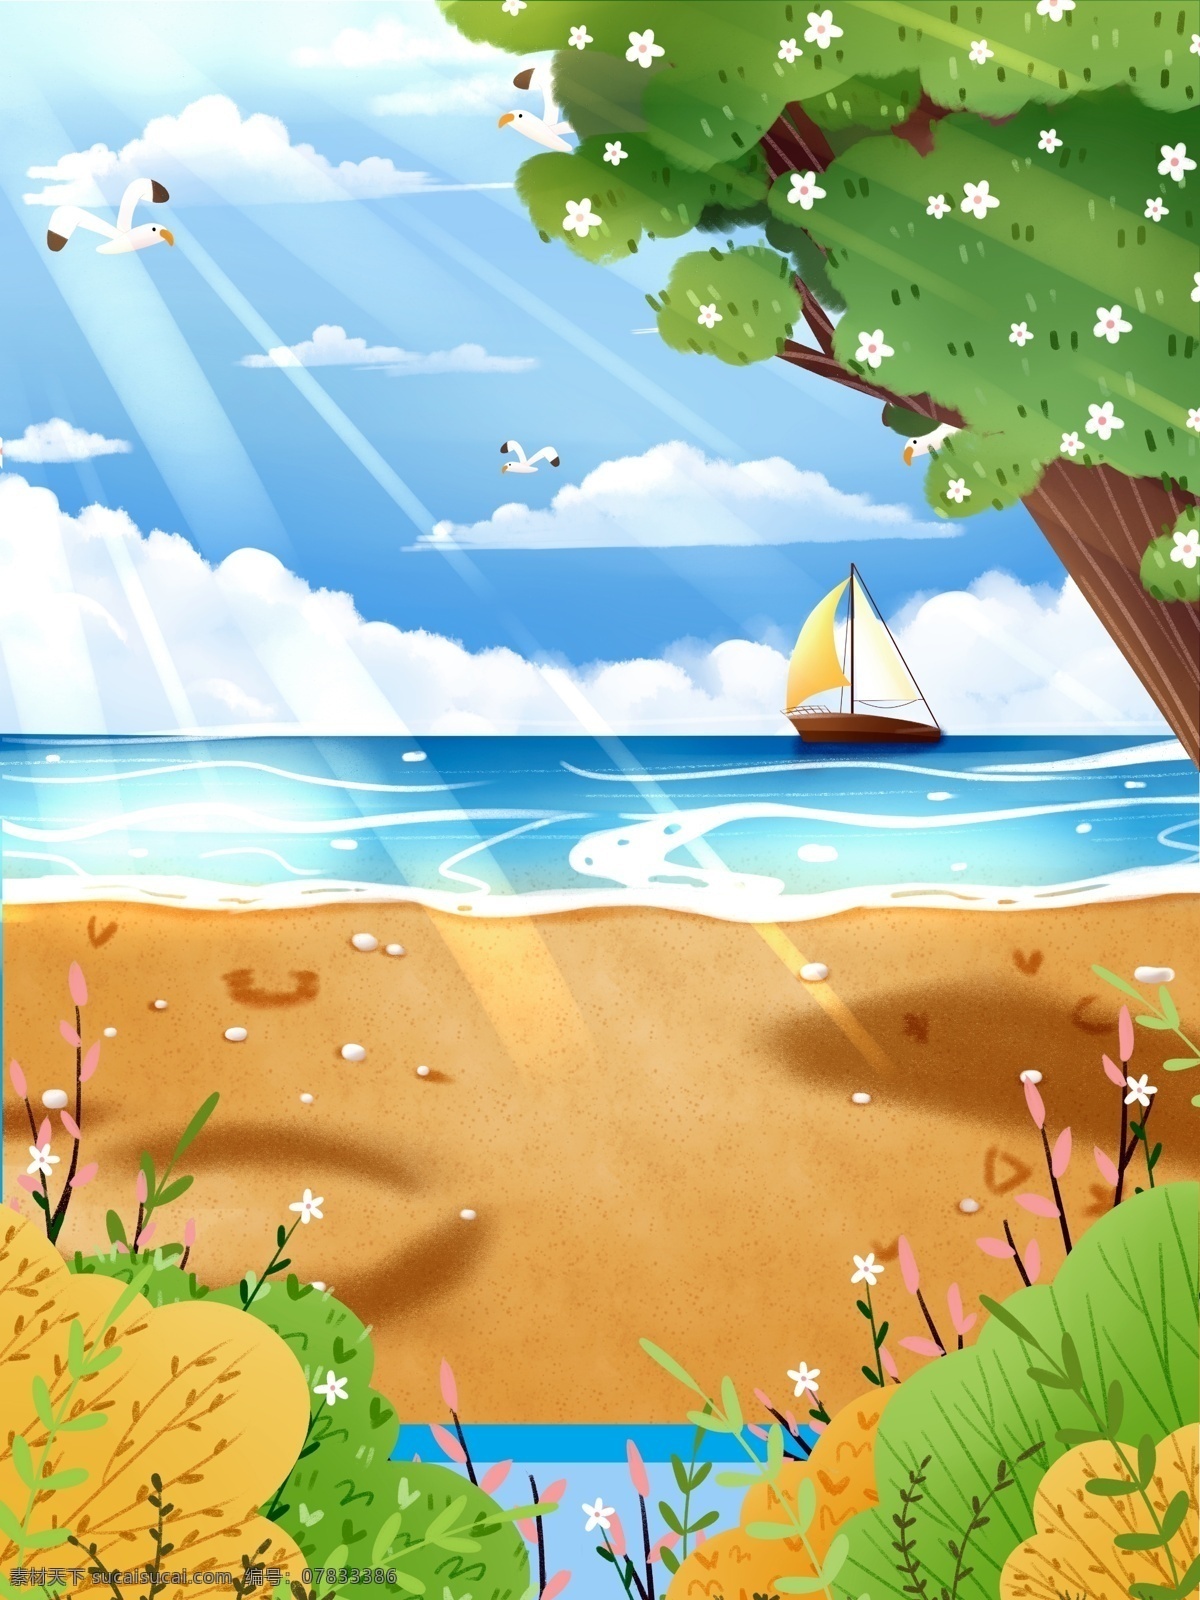 夏季 海滩 背景 夏天 夏季背景 帆船 夏至背景 海 沙滩背景 大树 太阳 海鸥 背景设计 手绘背景 背景展板 特邀背景 背景图